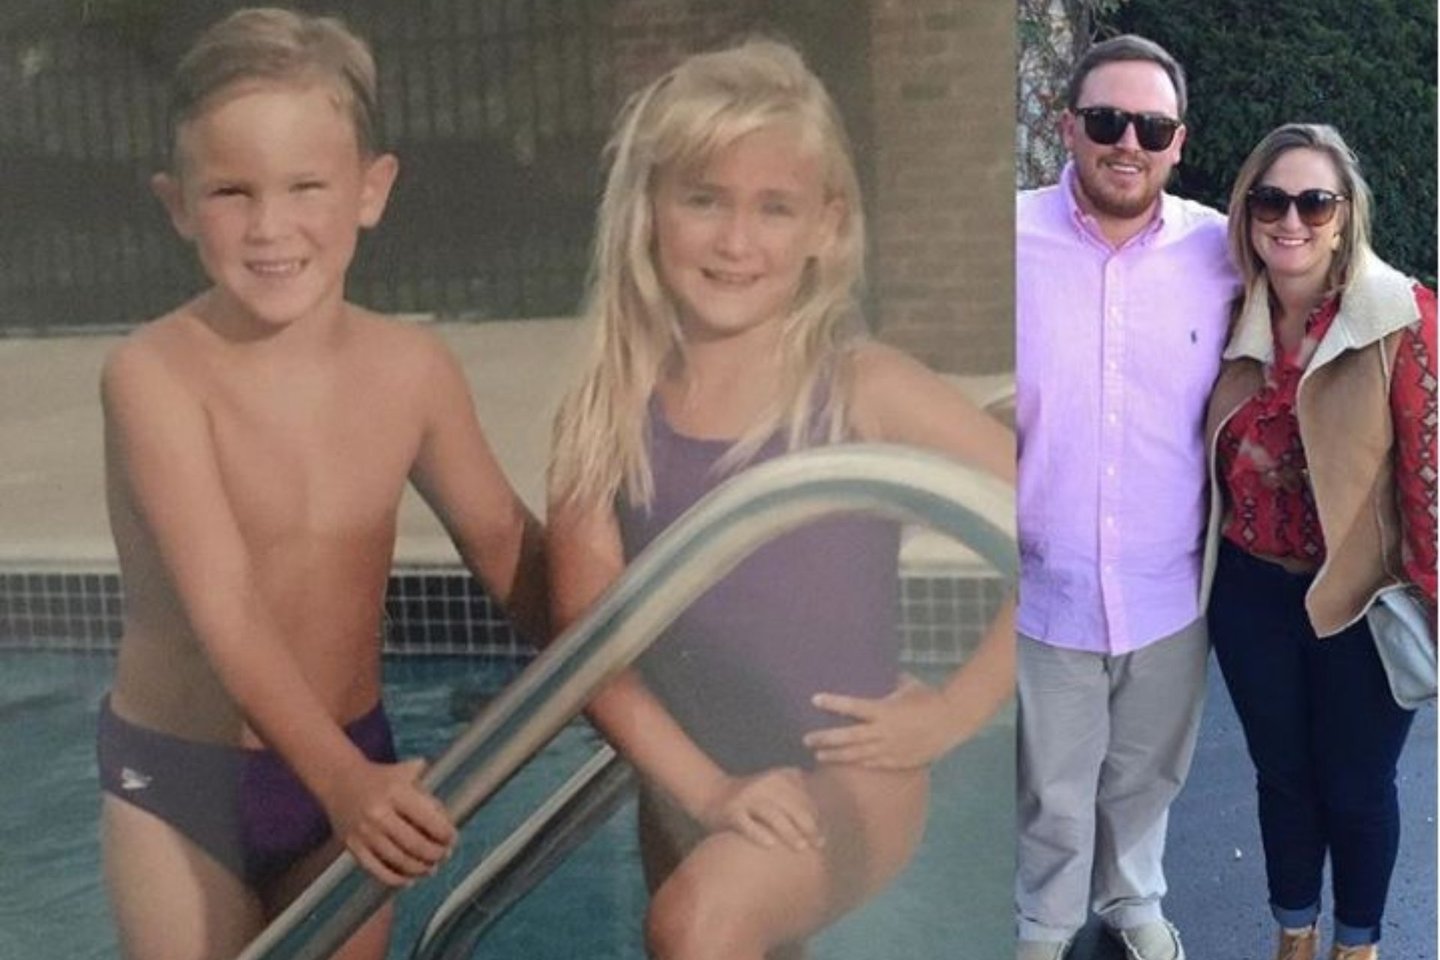  Kevinas ir Lindsey Minnickai, brolis ir sesuo, kartu kovojo dėl savo svorio ir jie pasiekė užsibrėžto tikslo.<br> Instagram nuotr.